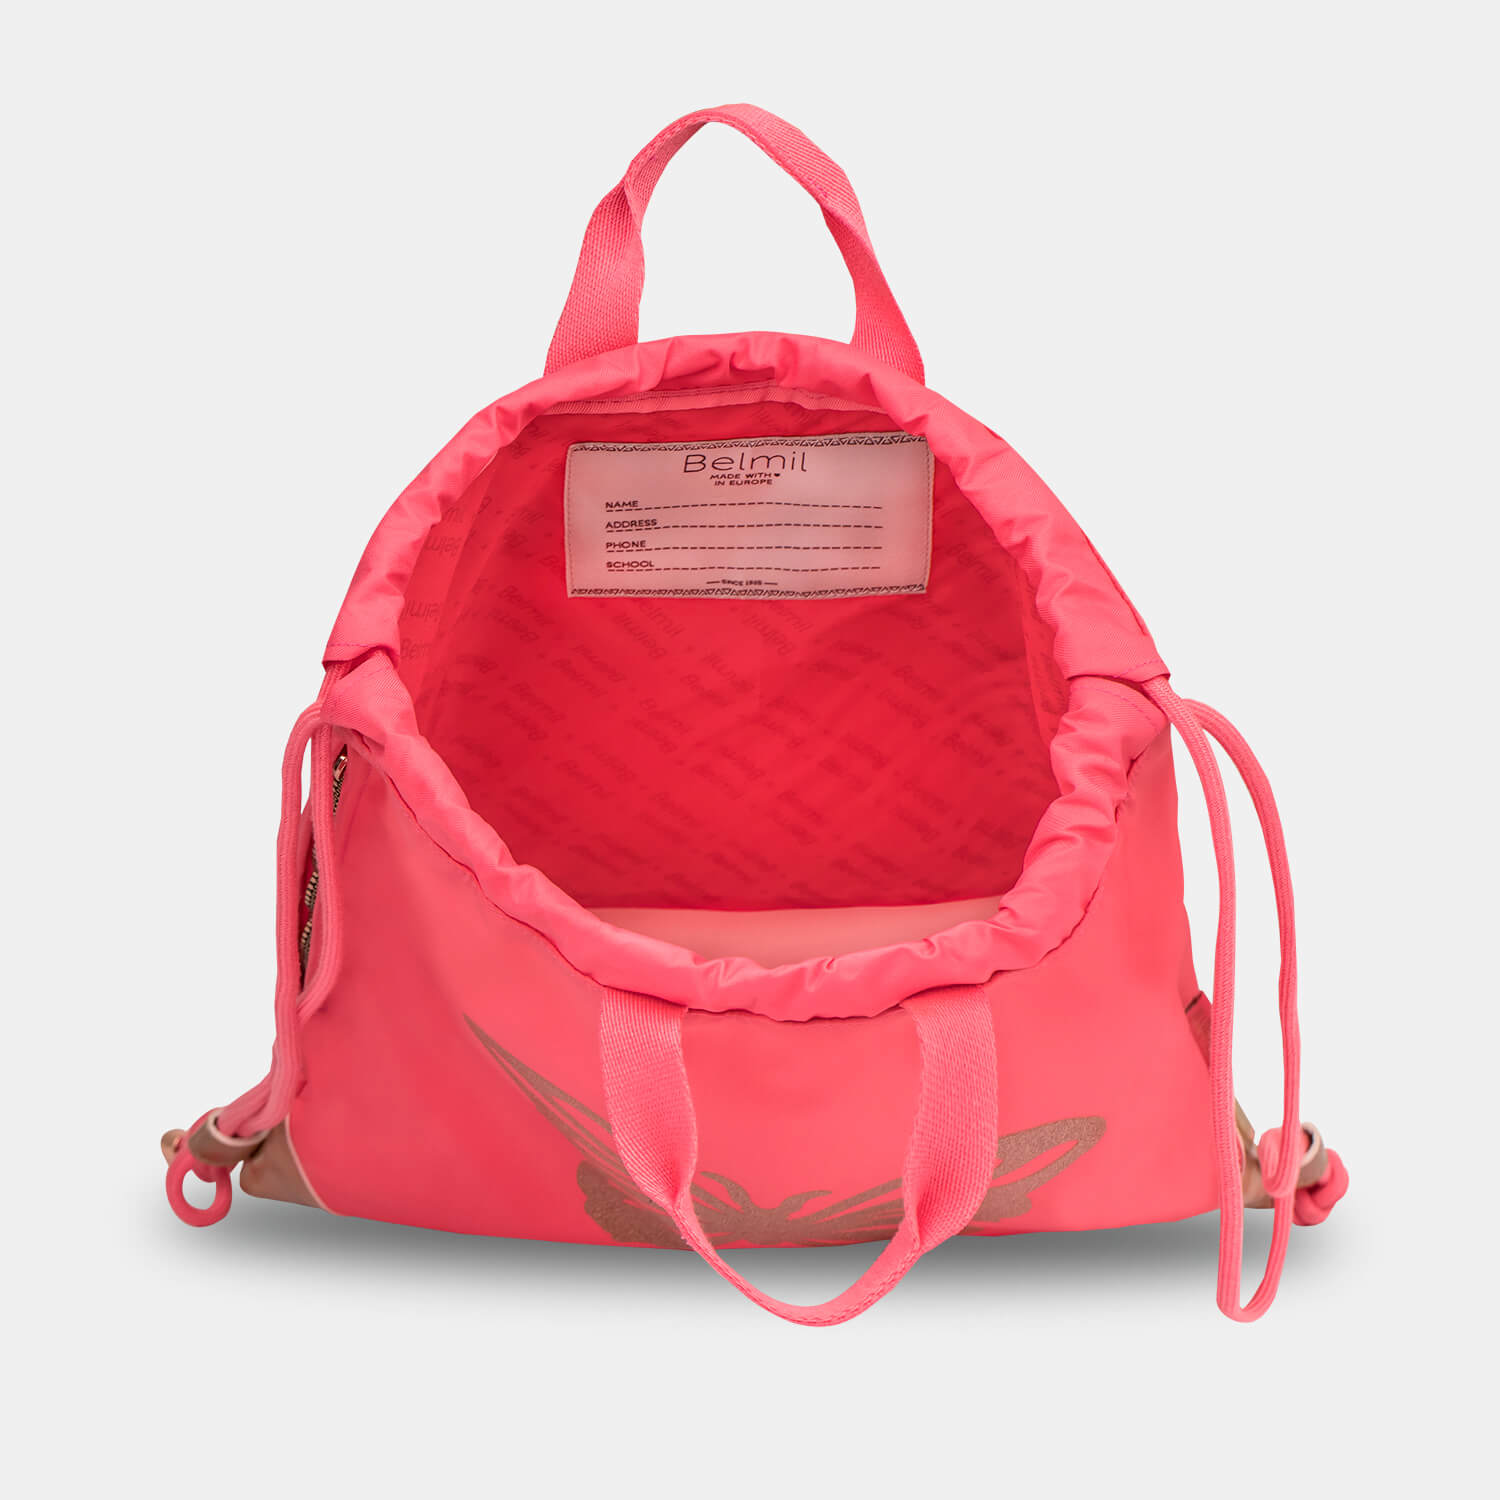 Petite Premium Shoulder bag Coral with GRATIS Gym bag